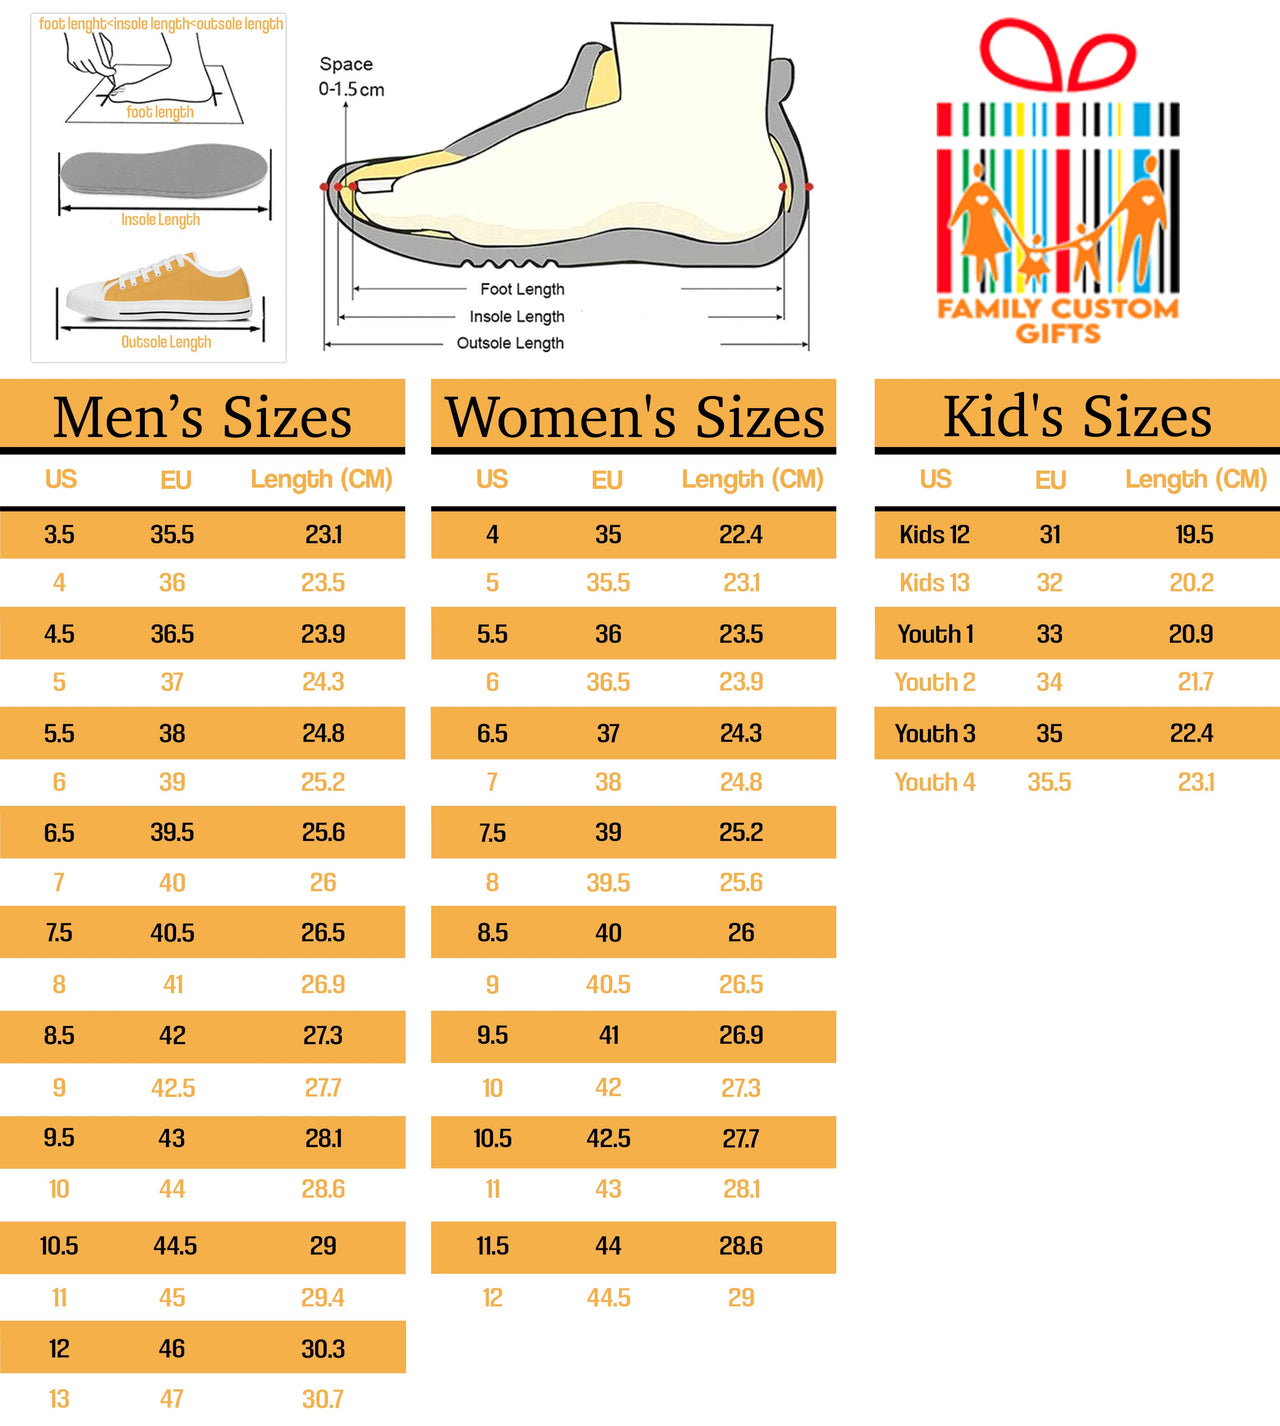 Trumpet 01 Low Cut Canvas Shoes for Men Women 3D Prints Fashion Sneakers Custom Shoes